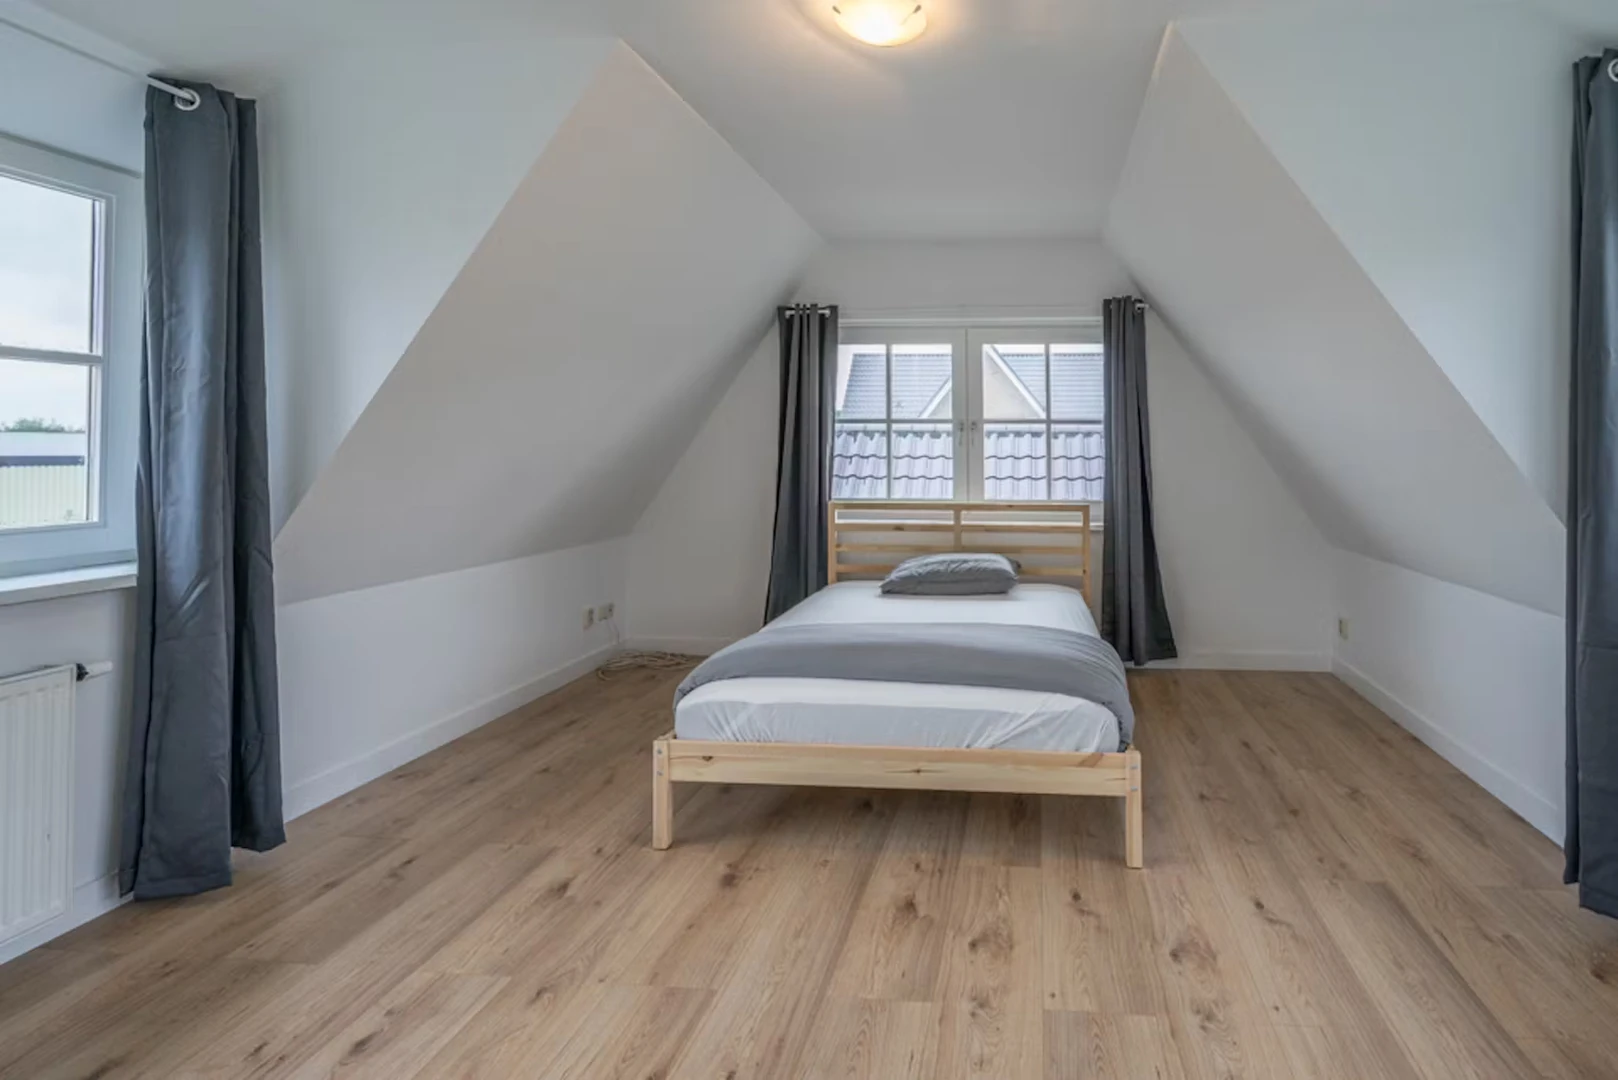 Alquiler de habitaciones por meses en Amsterdam